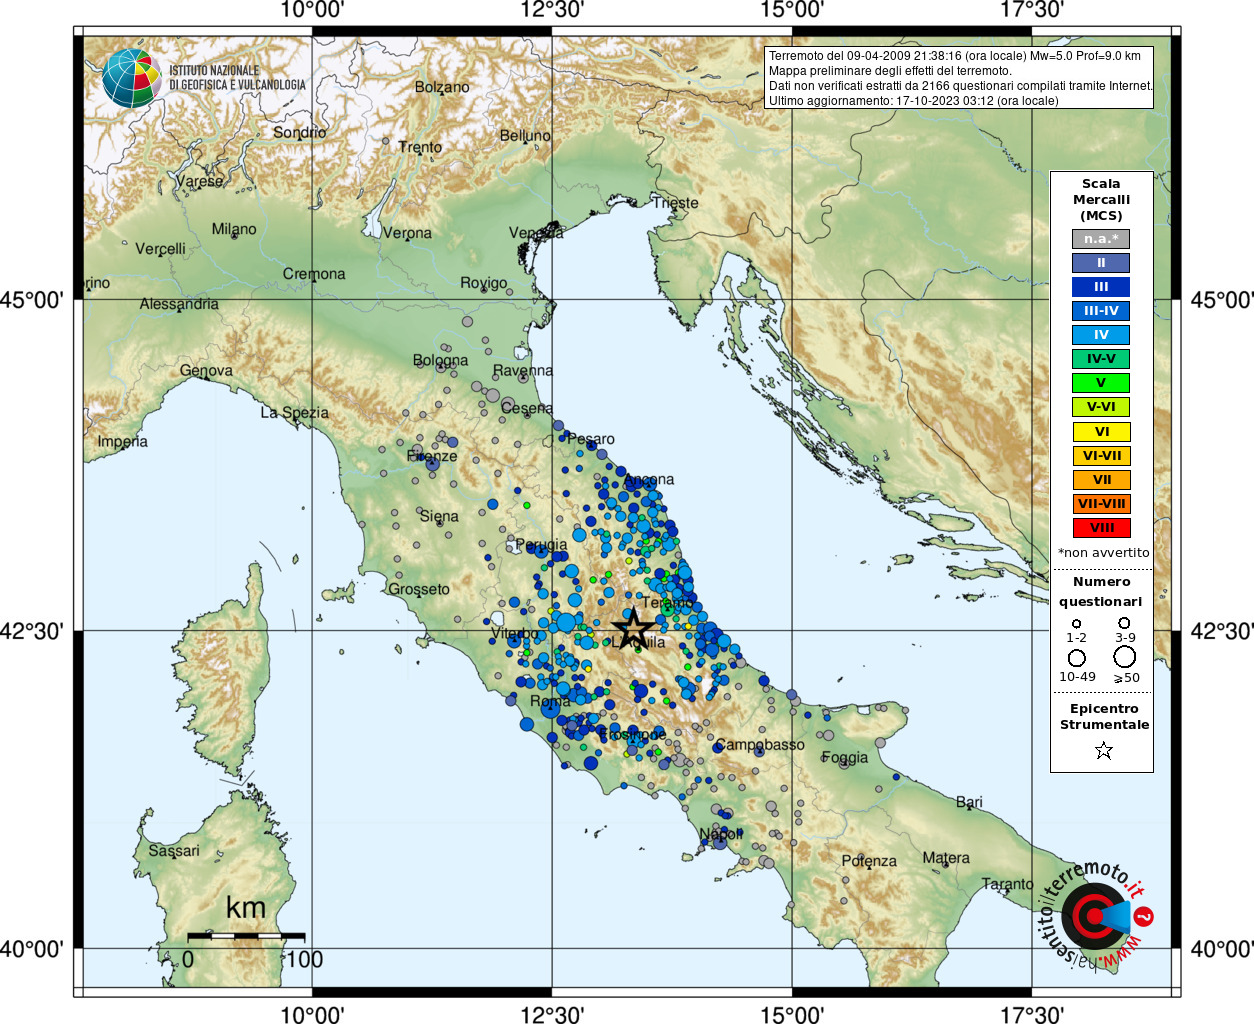 Earthquake 4 km E Capitignano (AQ), Magnitude Mw 5.0, 9 April 2009 time 21:38:16 ...